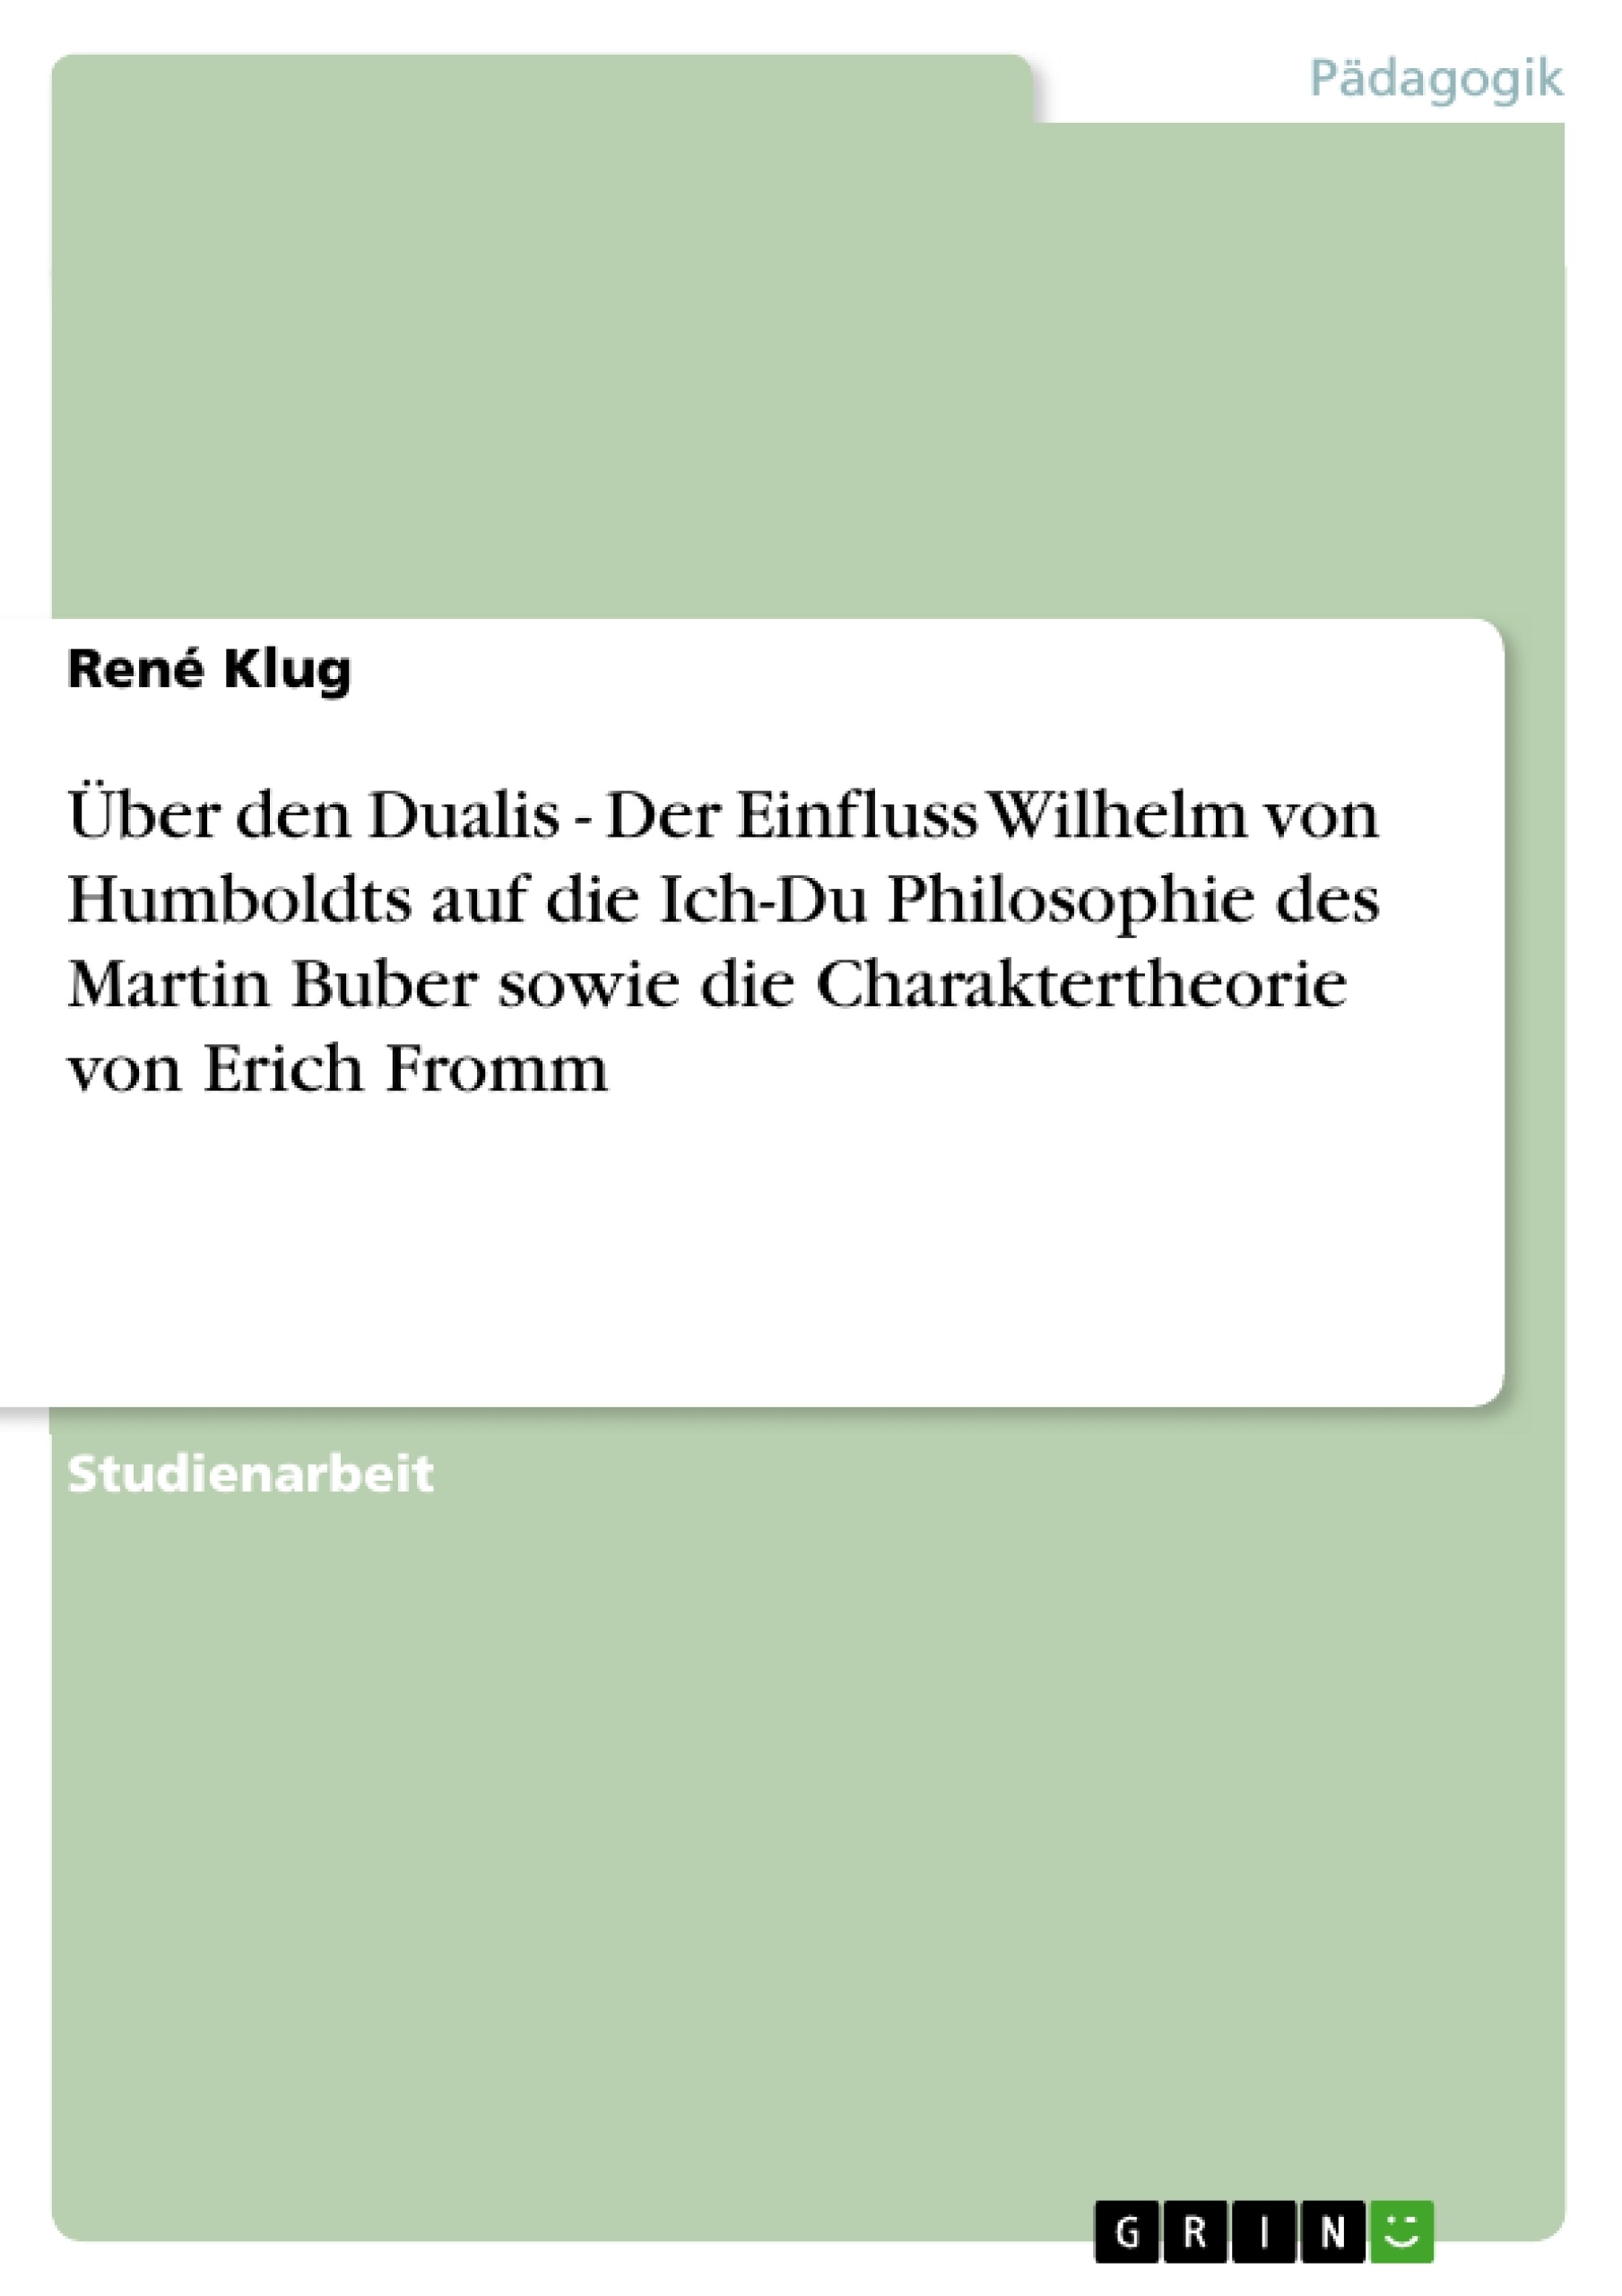 Título: Über den Dualis - Der Einfluss Wilhelm von Humboldts auf die Ich-Du Philosophie des Martin Buber sowie die Charaktertheorie von Erich Fromm